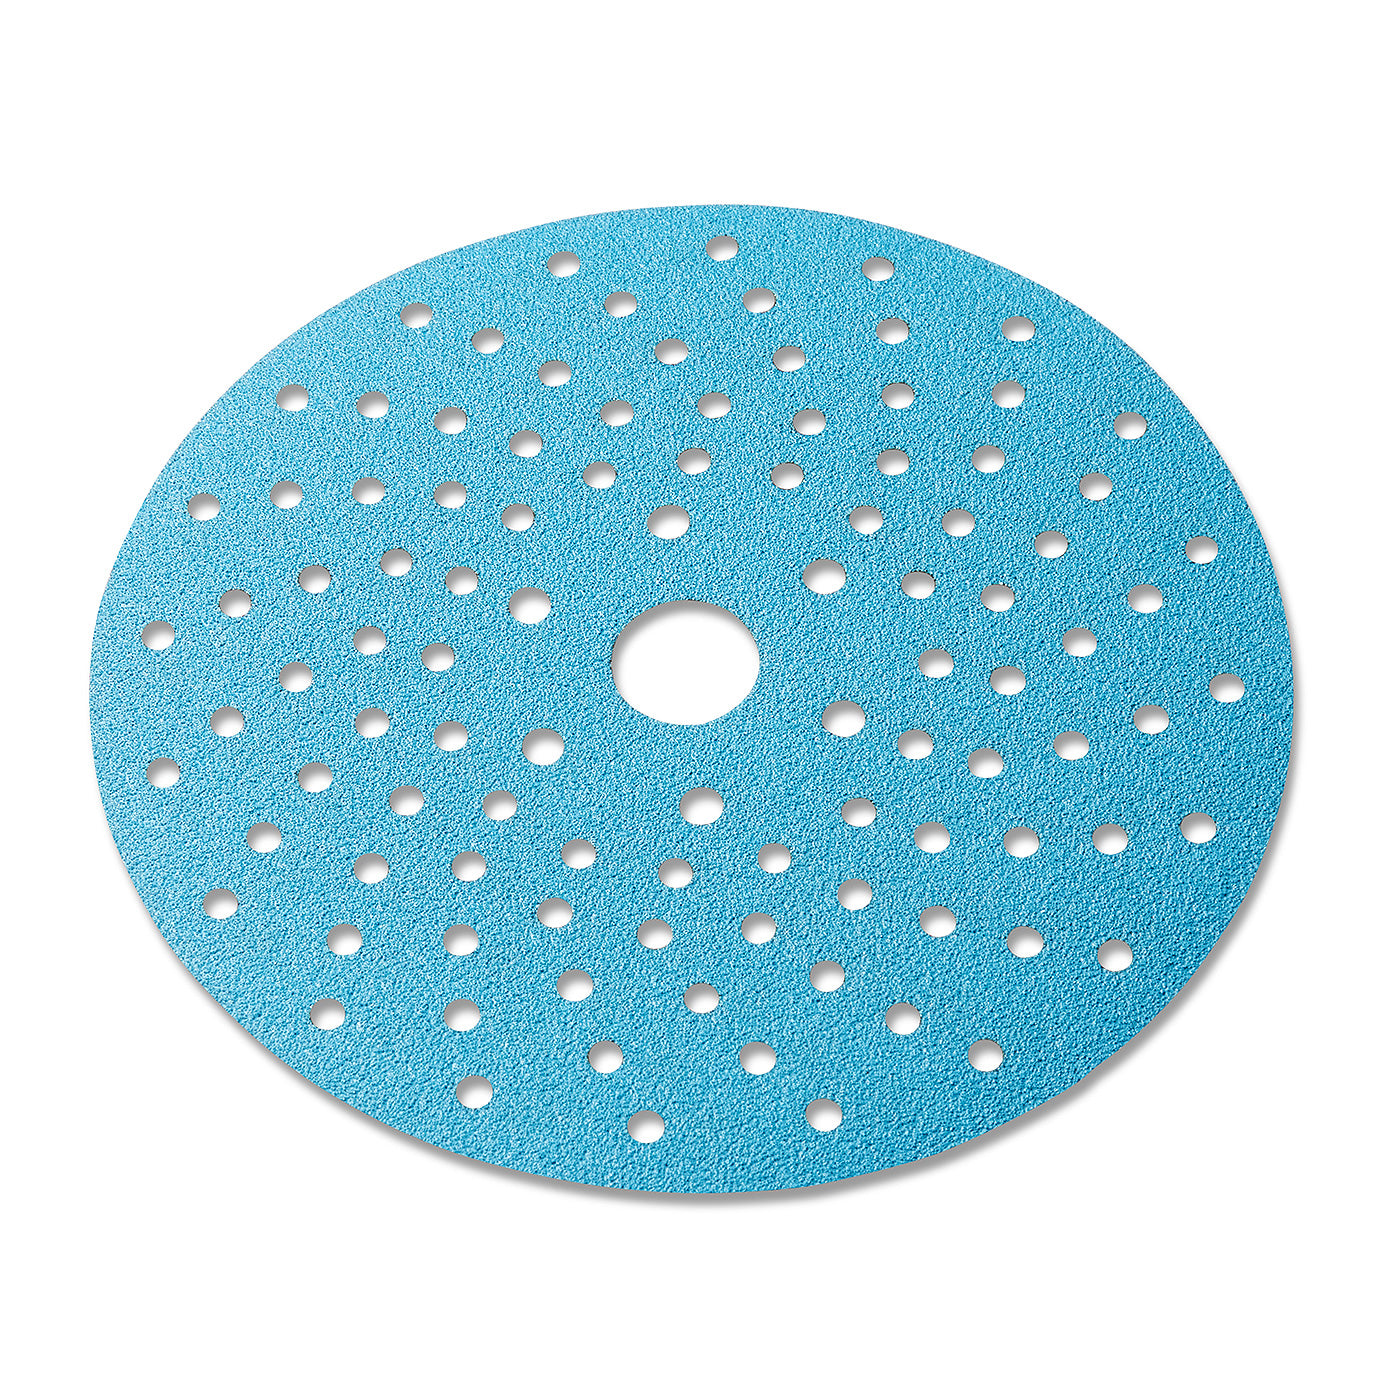 125mm Ceramic Abrasive Discs